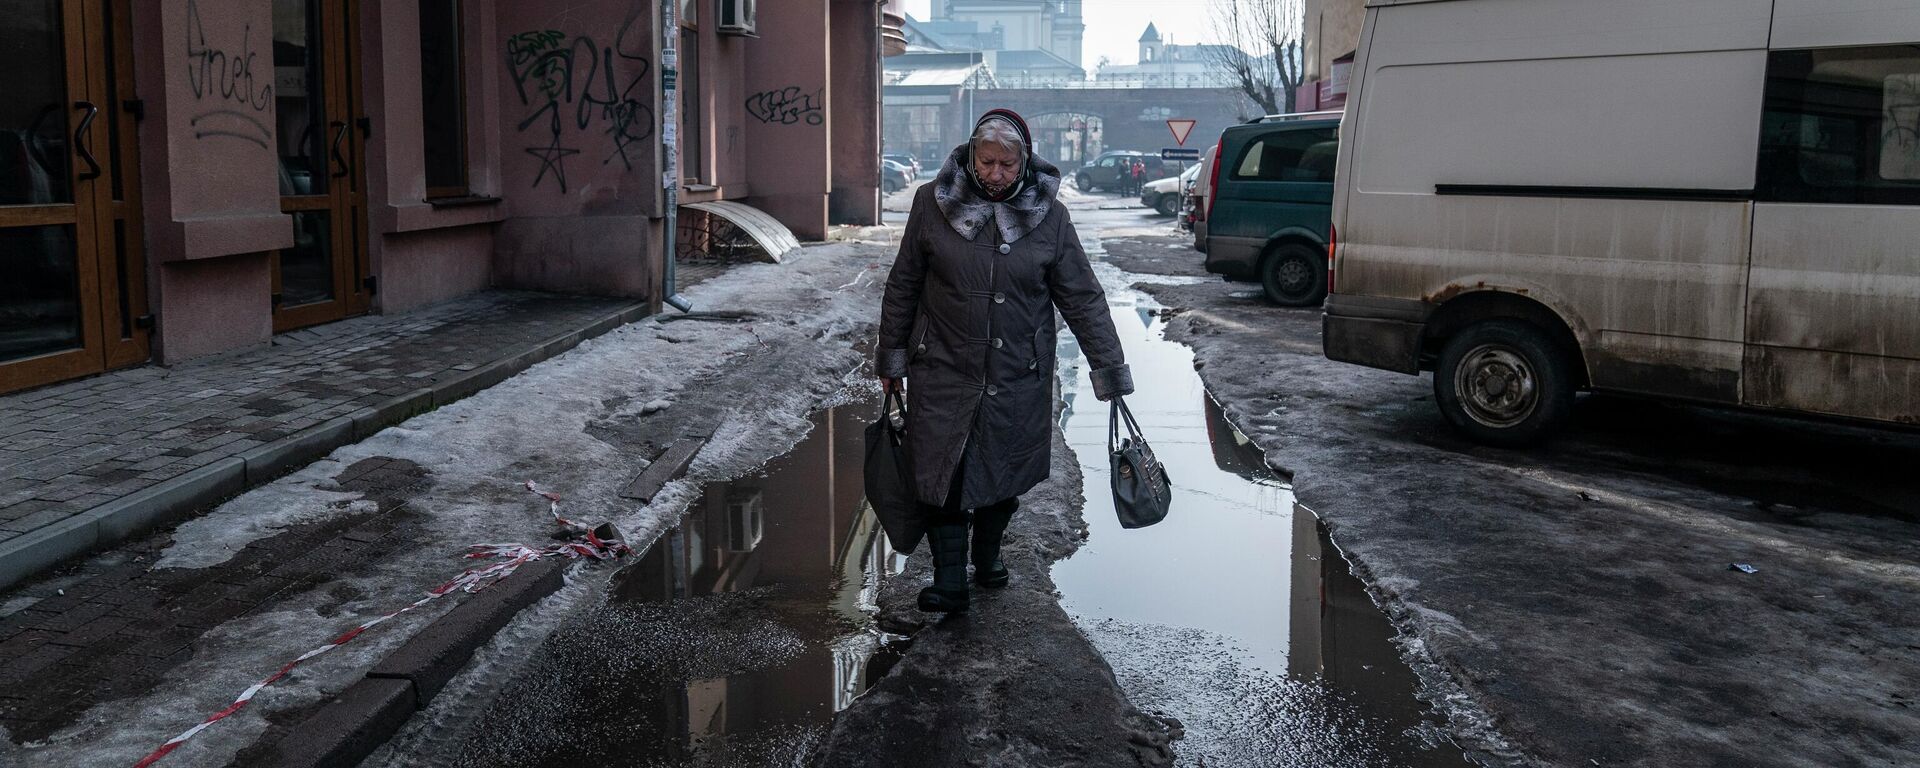 Женщина идет по улице в Ивано-Франковске, Украина - Sputnik Узбекистан, 1920, 10.04.2021